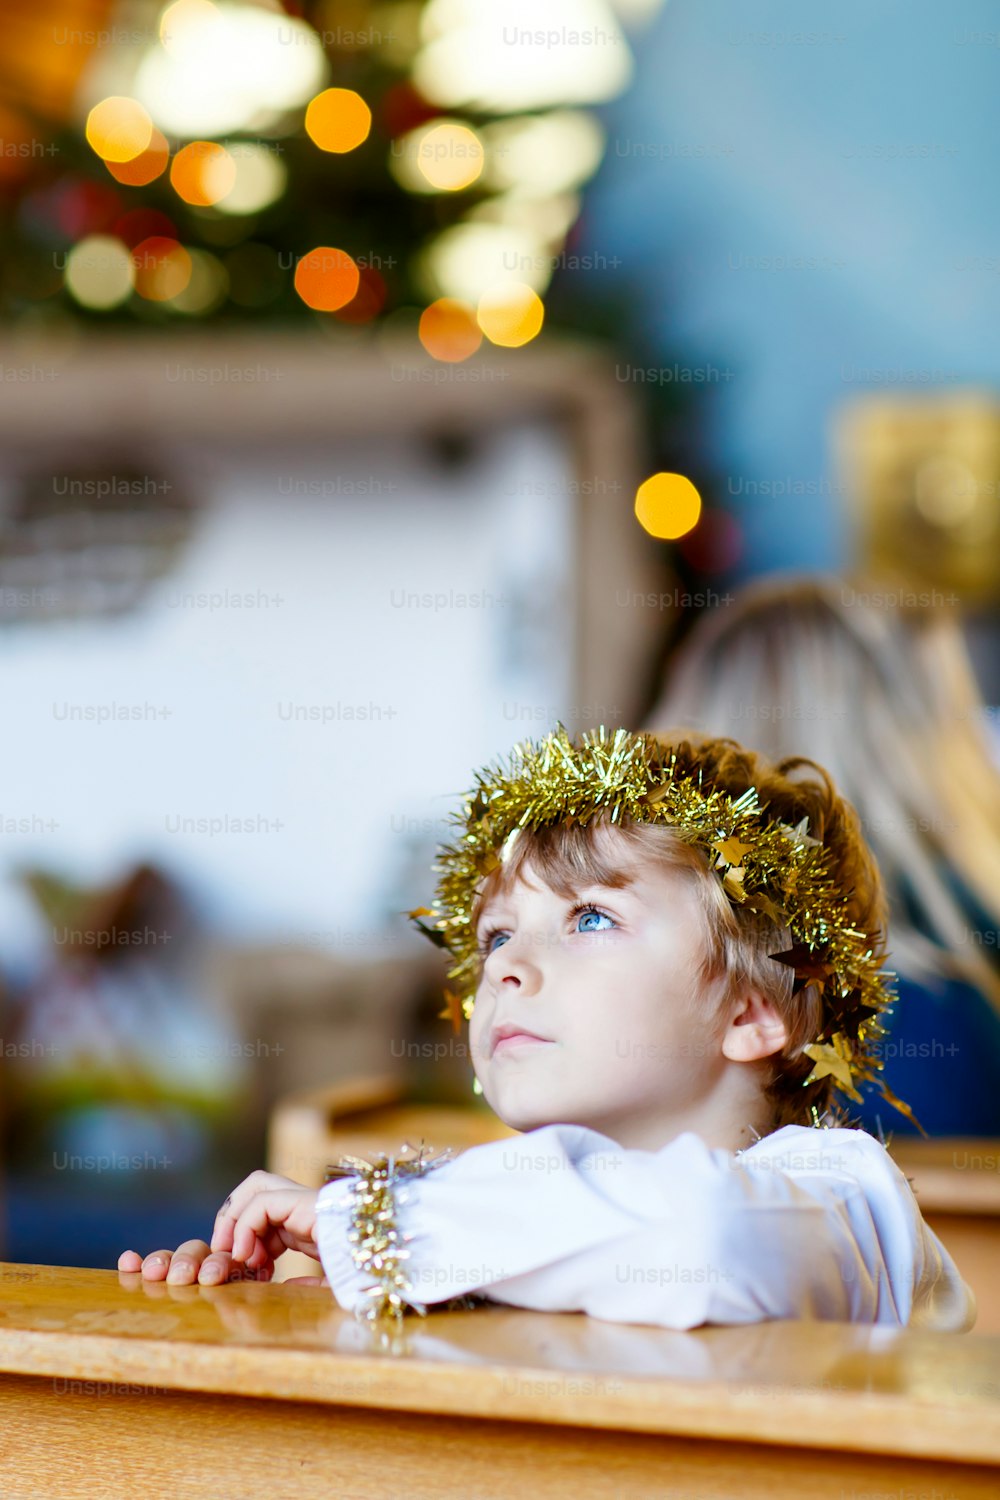 Bellissimo ragazzino come un angelo nella storia di Natale in una chiesa. Bambino biondo adorabile felice con le luci e l'albero di Natale sullo sfondo.